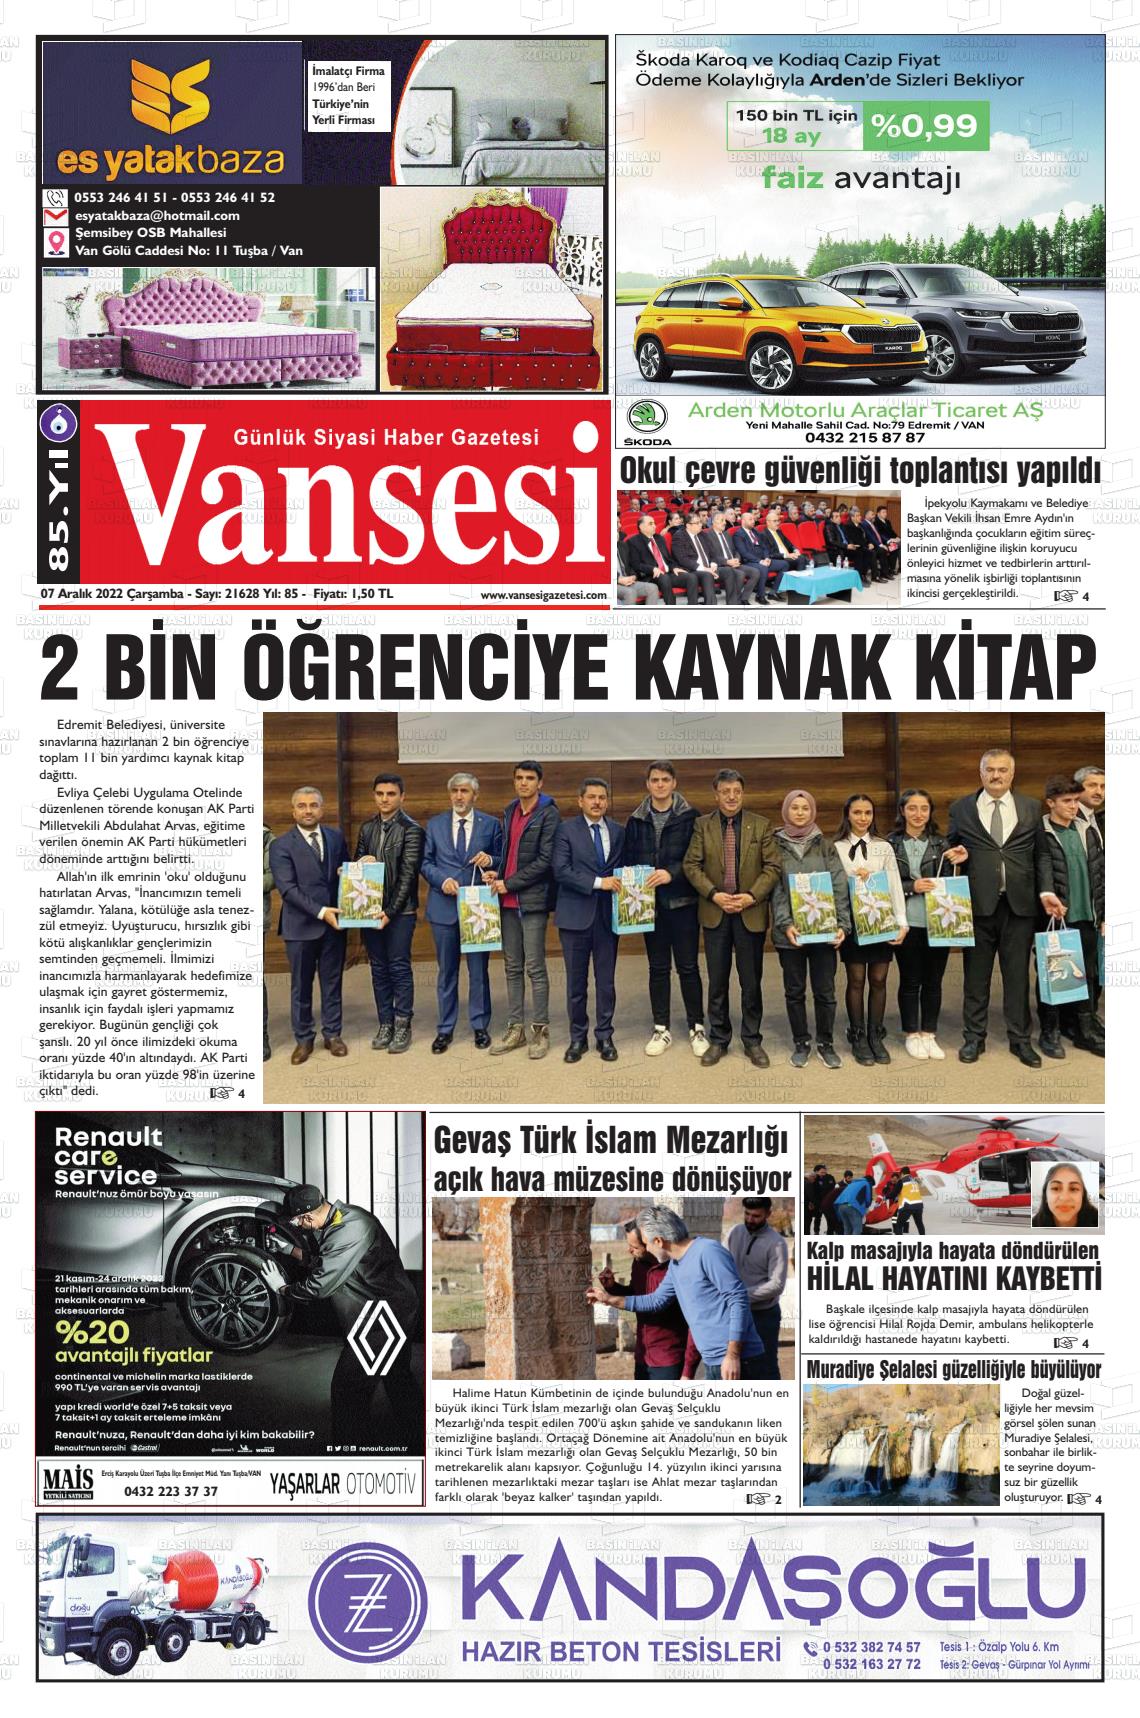 07 Aralık 2022 Vansesi Gazete Manşeti